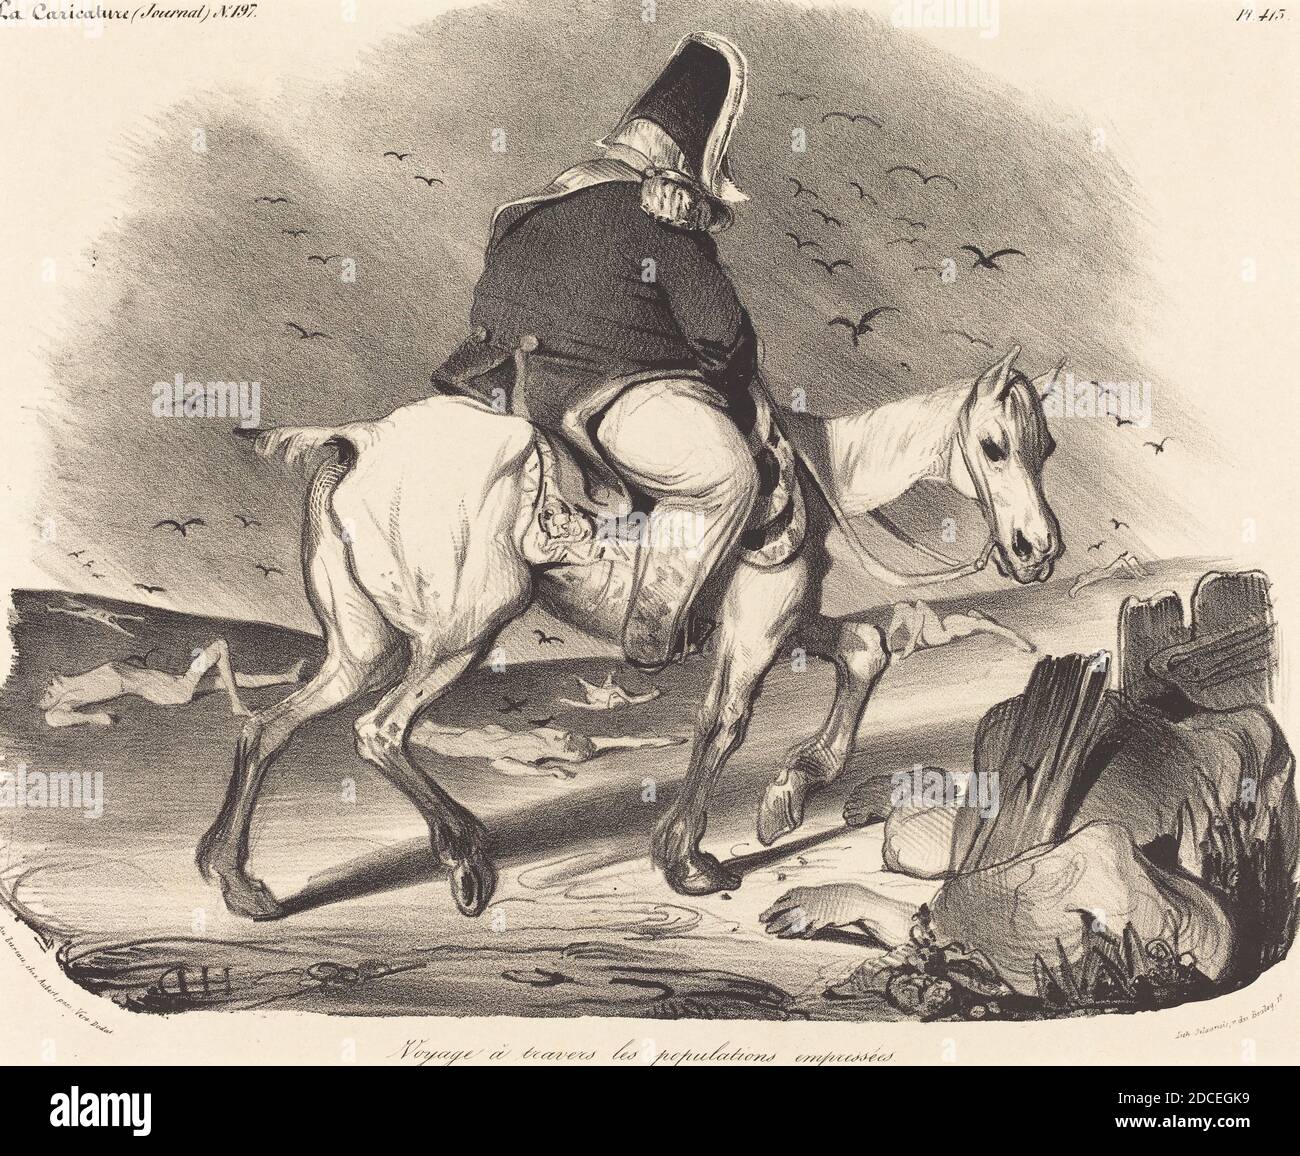 Honoré Daumier, (artista), francese, 1808 - 1879, Voyage a travers les Populations empressées, la caricature: pl. 413, (serie), 1834, litografia Foto Stock